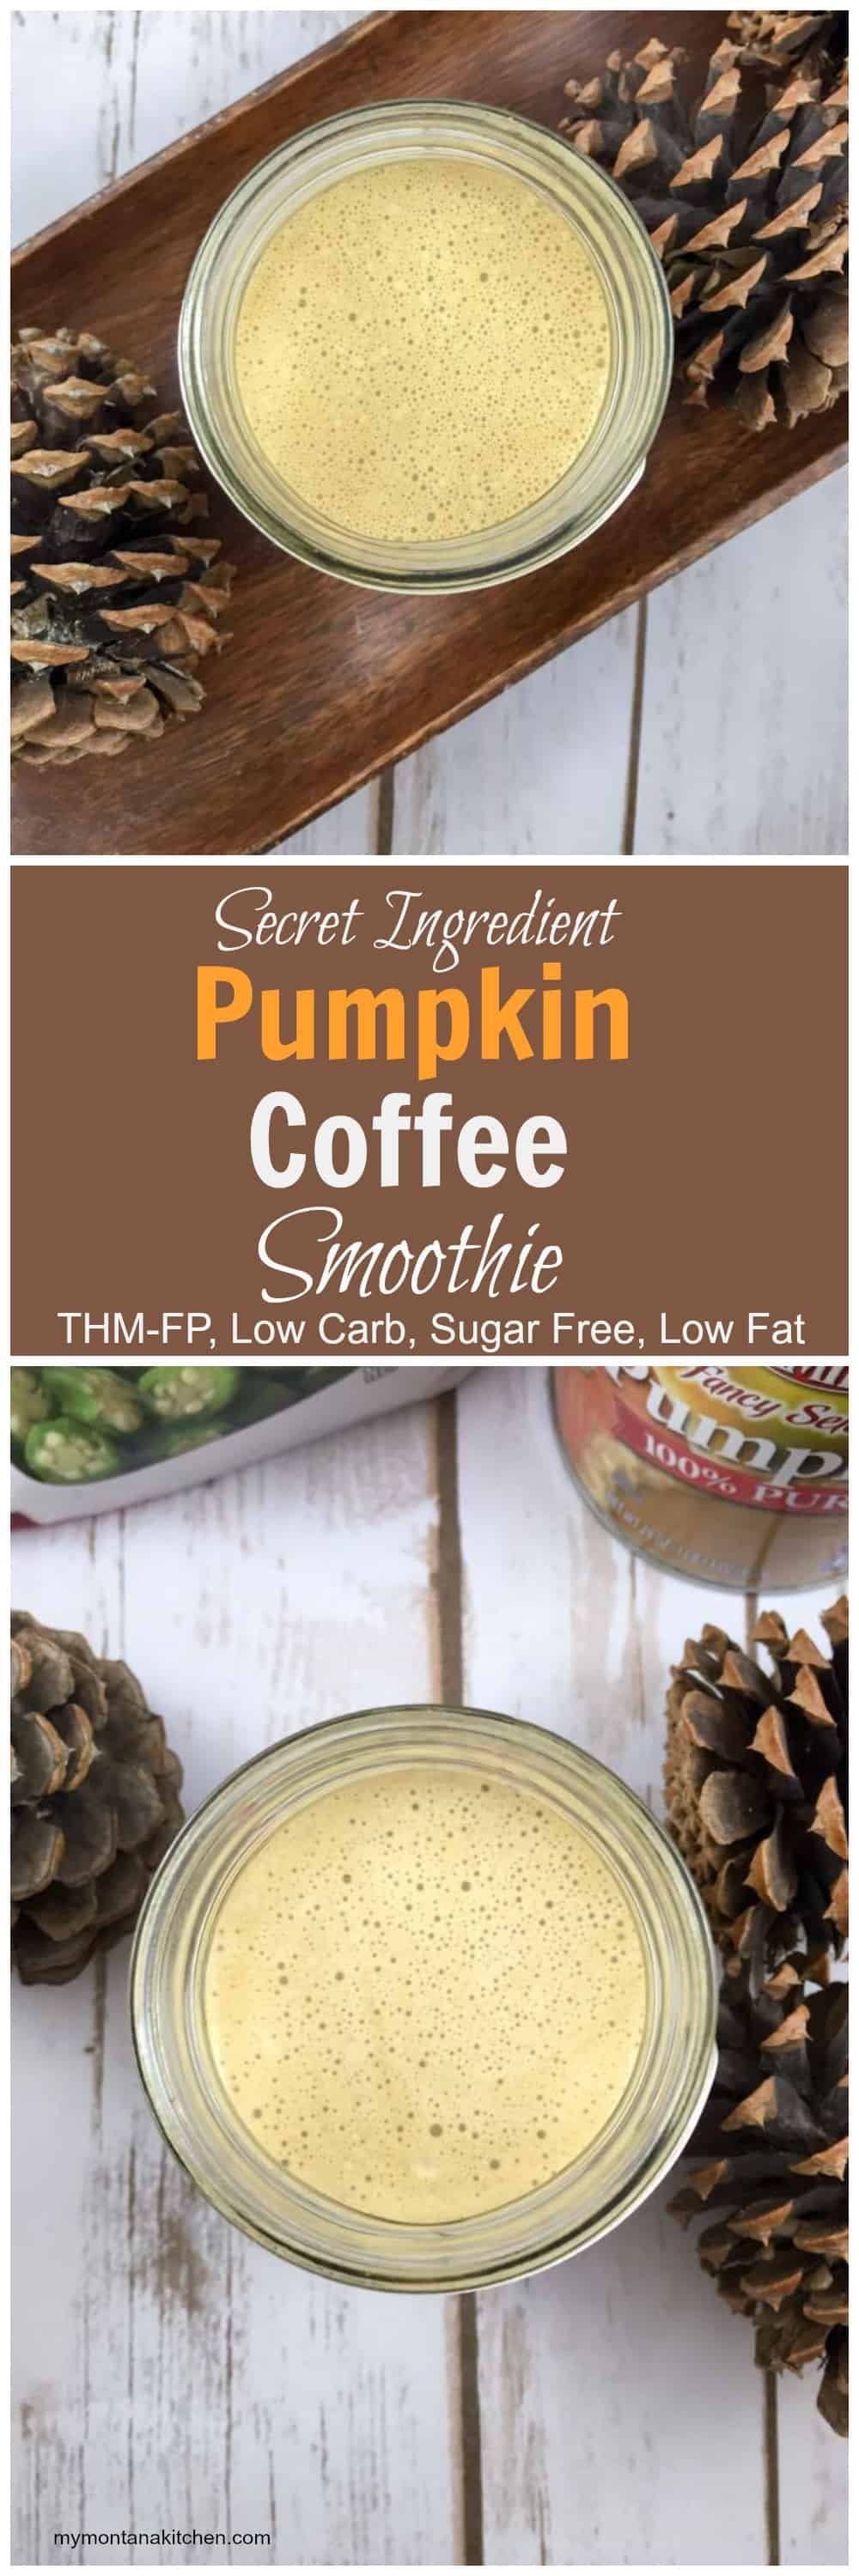 Secret Ingredient Pumpkin Coffee Smoothie